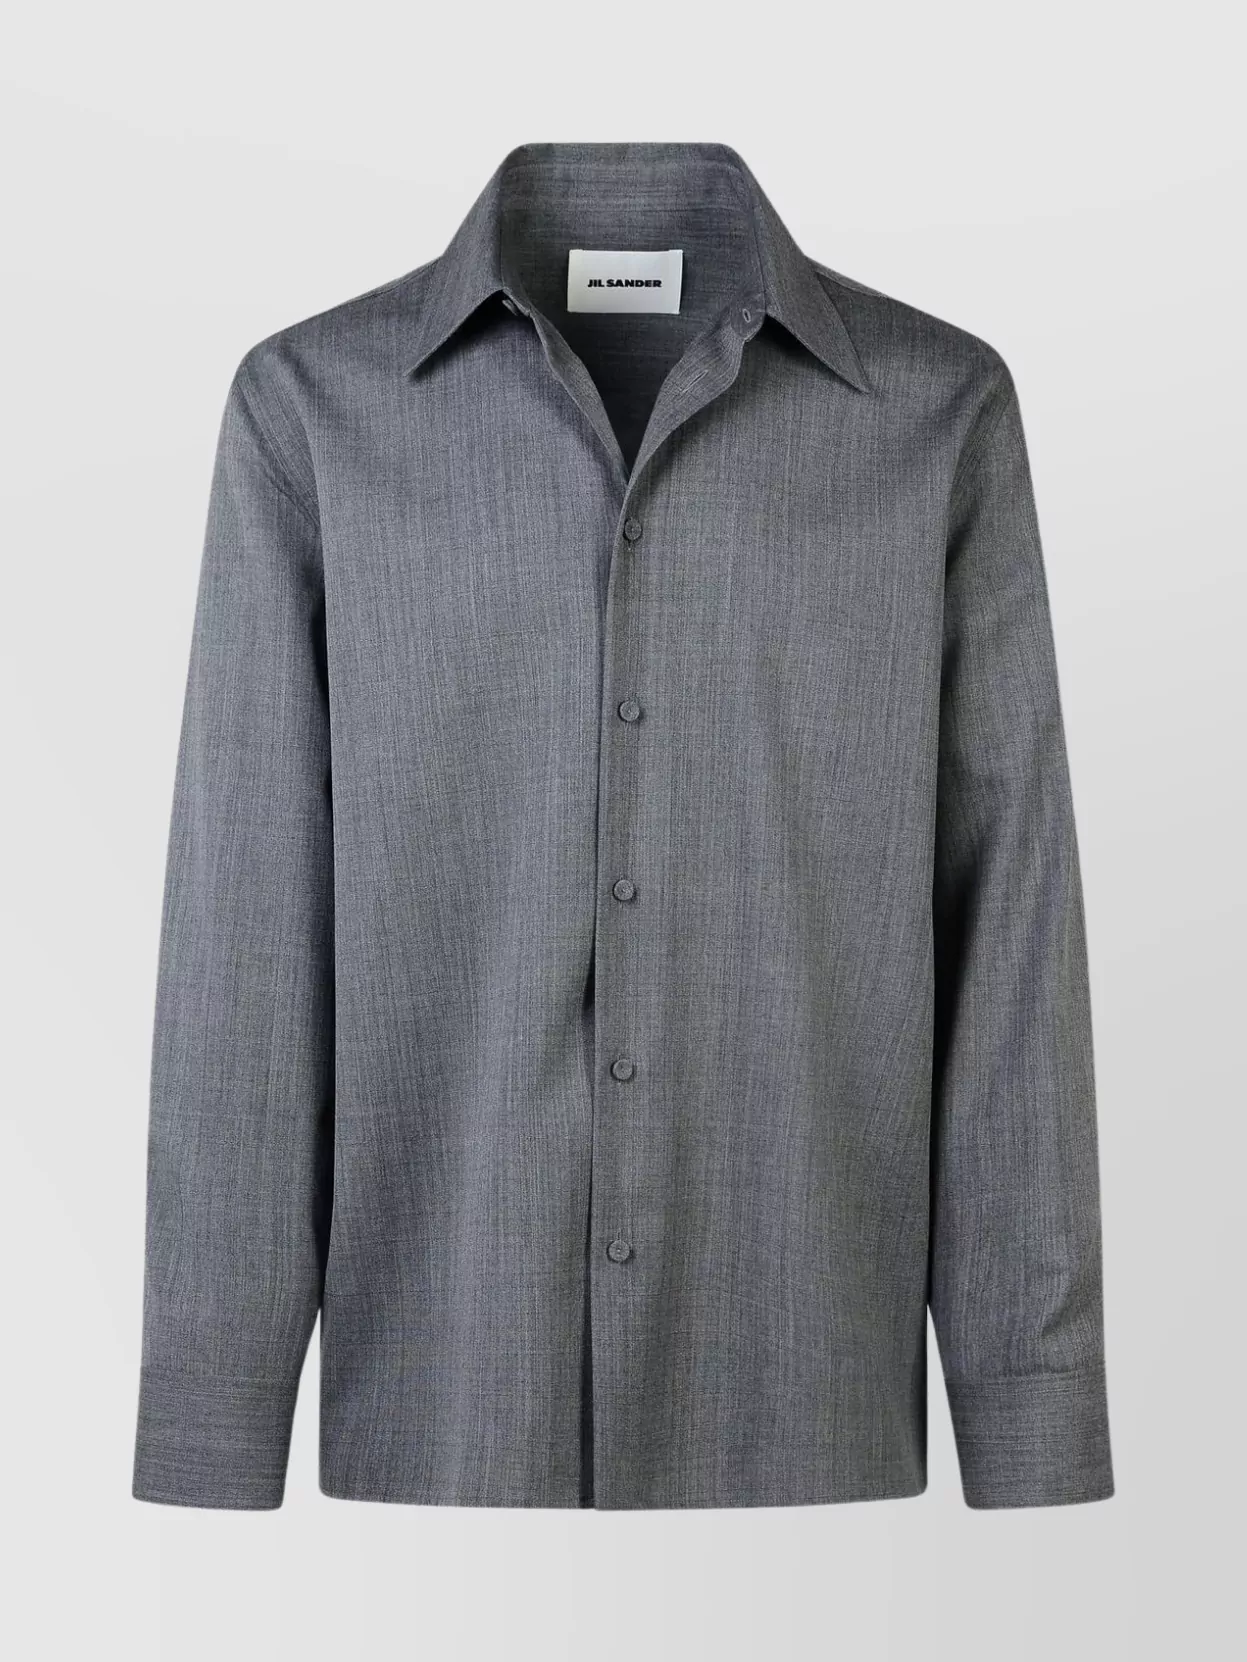 Jil Sander Wool Shirt Long Sleeves In Metallic